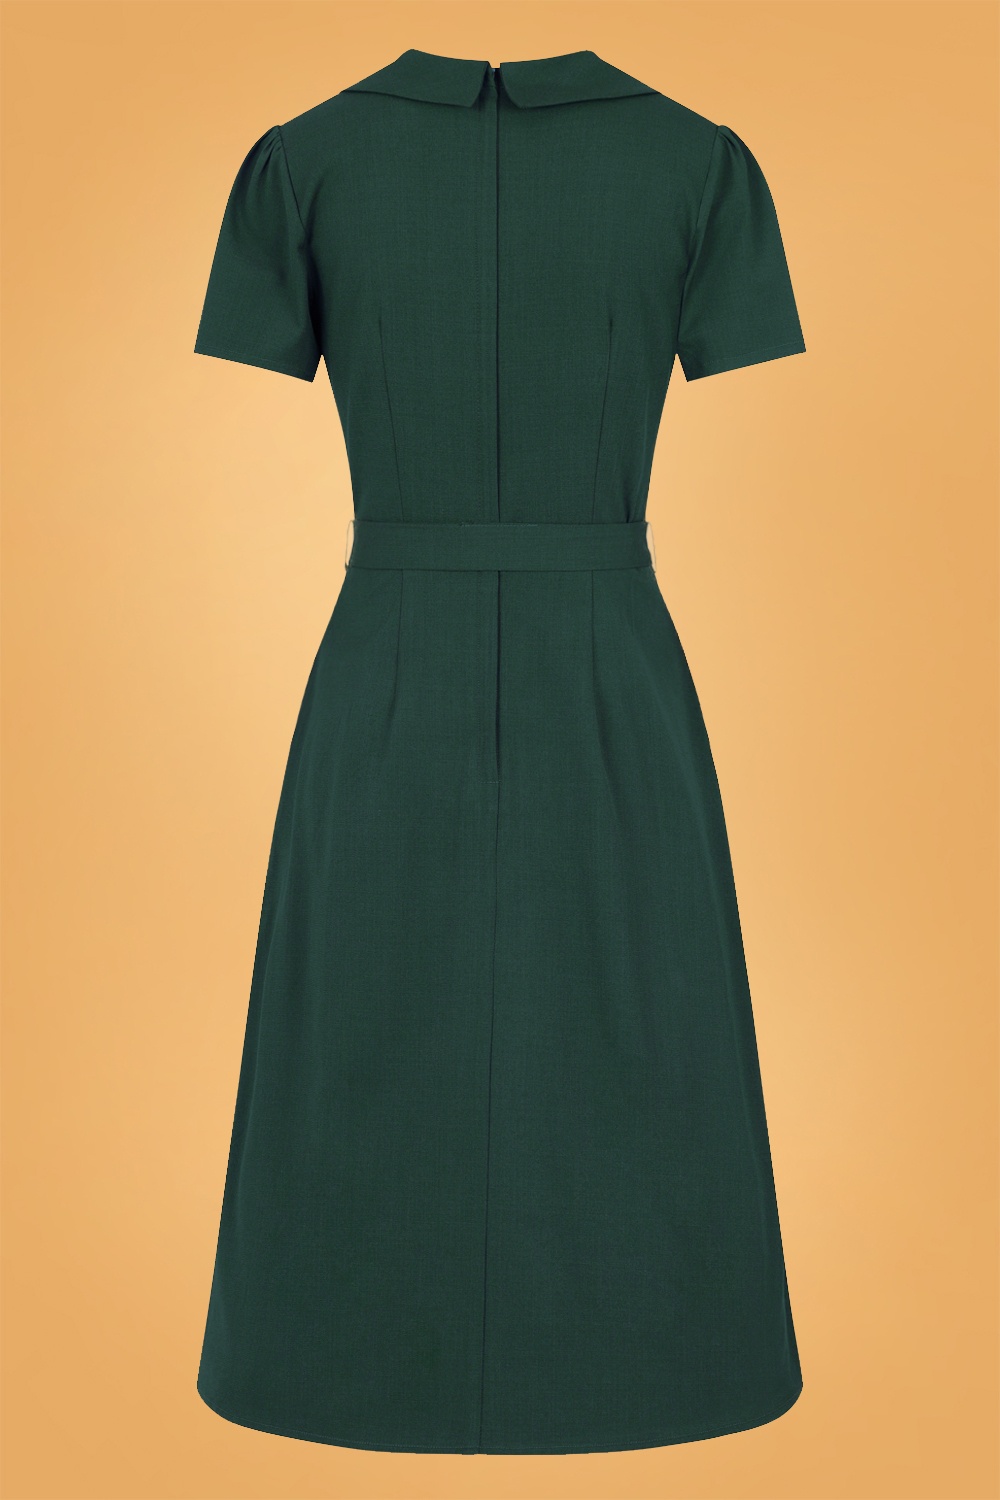 Collectif Clothing - Hattie uitlopende jurk in groen 4